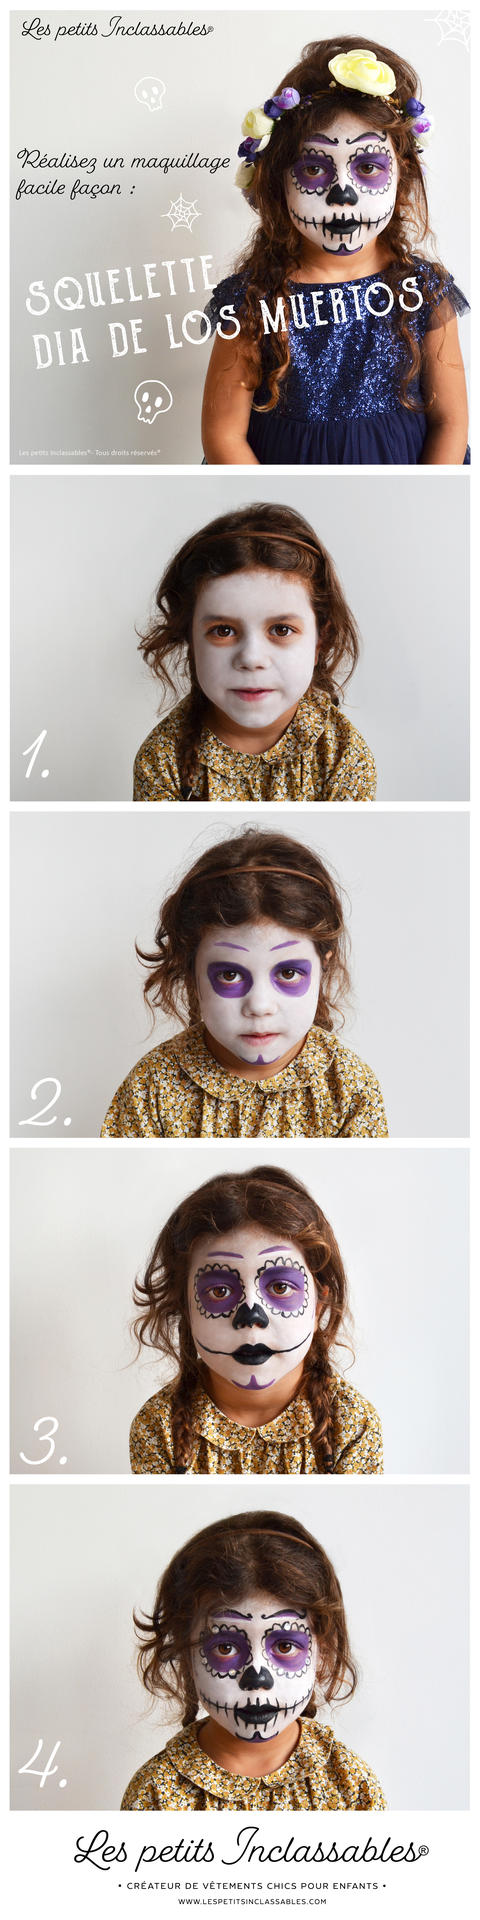 Masque Halloween Enfant - 3 Modèles au Choix